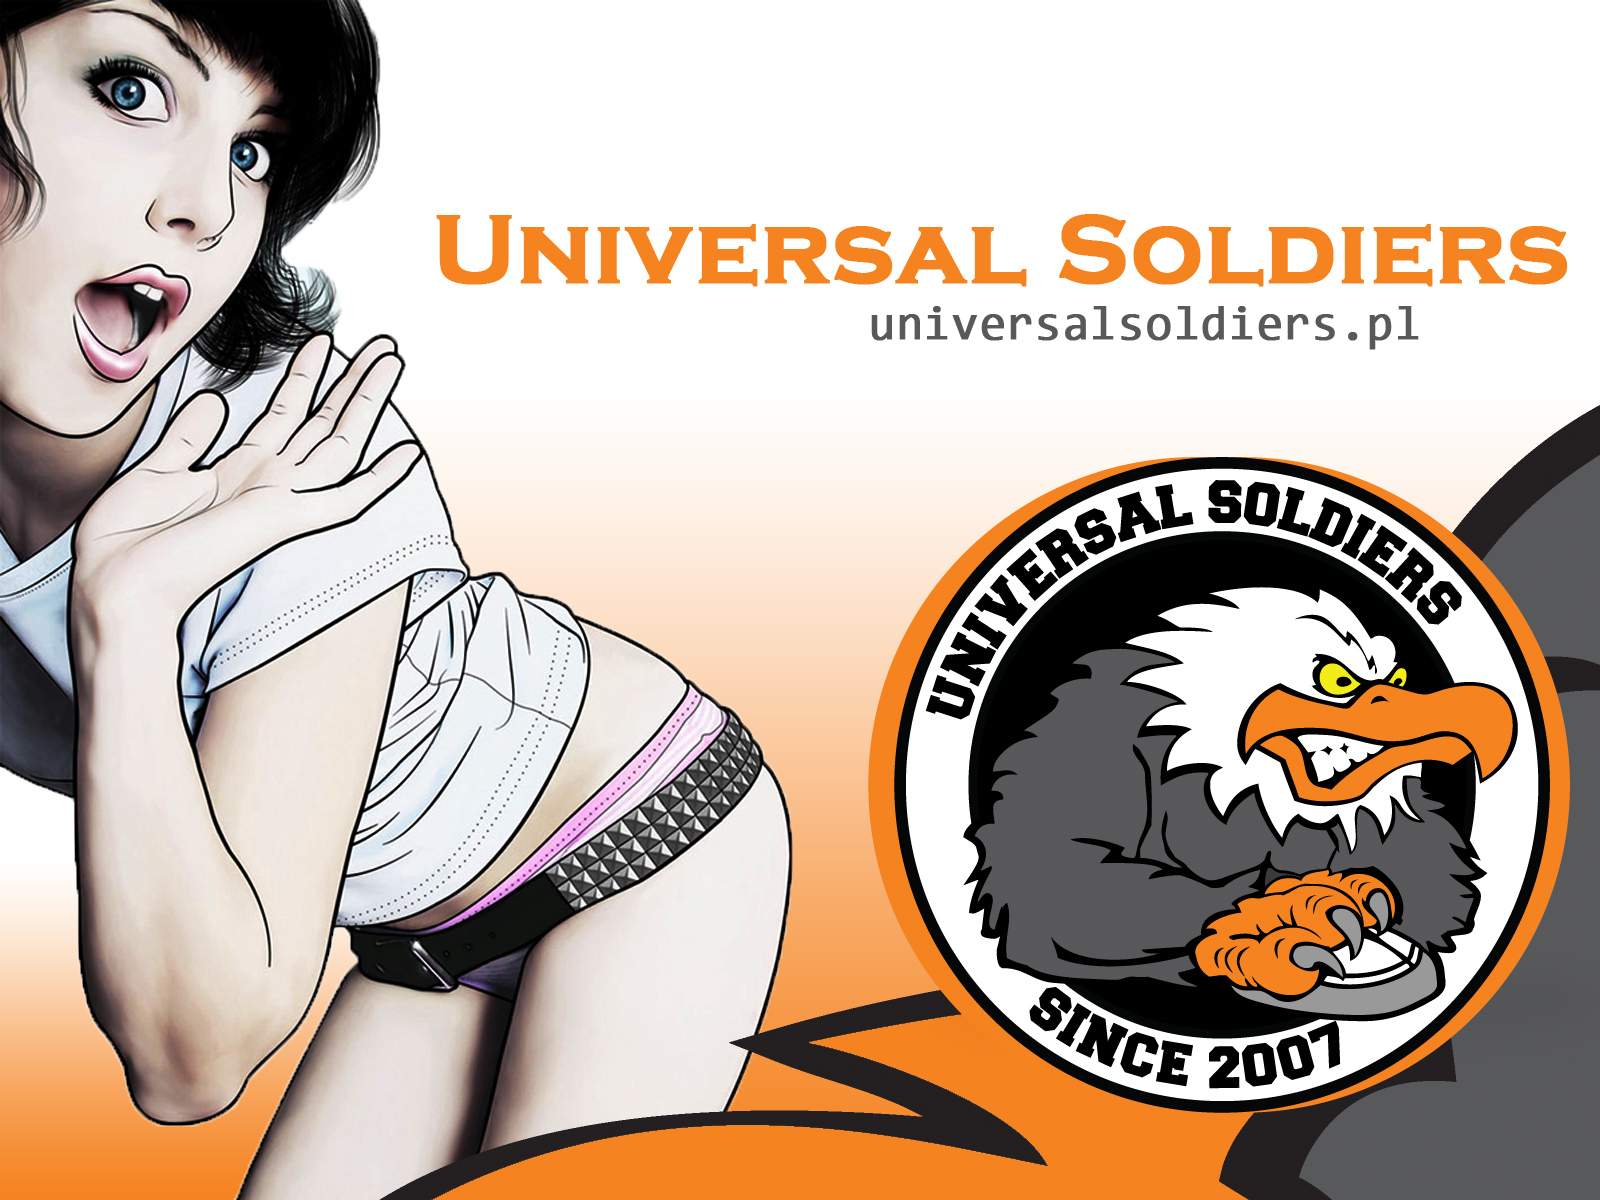 Скачать обои Сша Universal Soldiers Counter Strike на телефон бесплатно